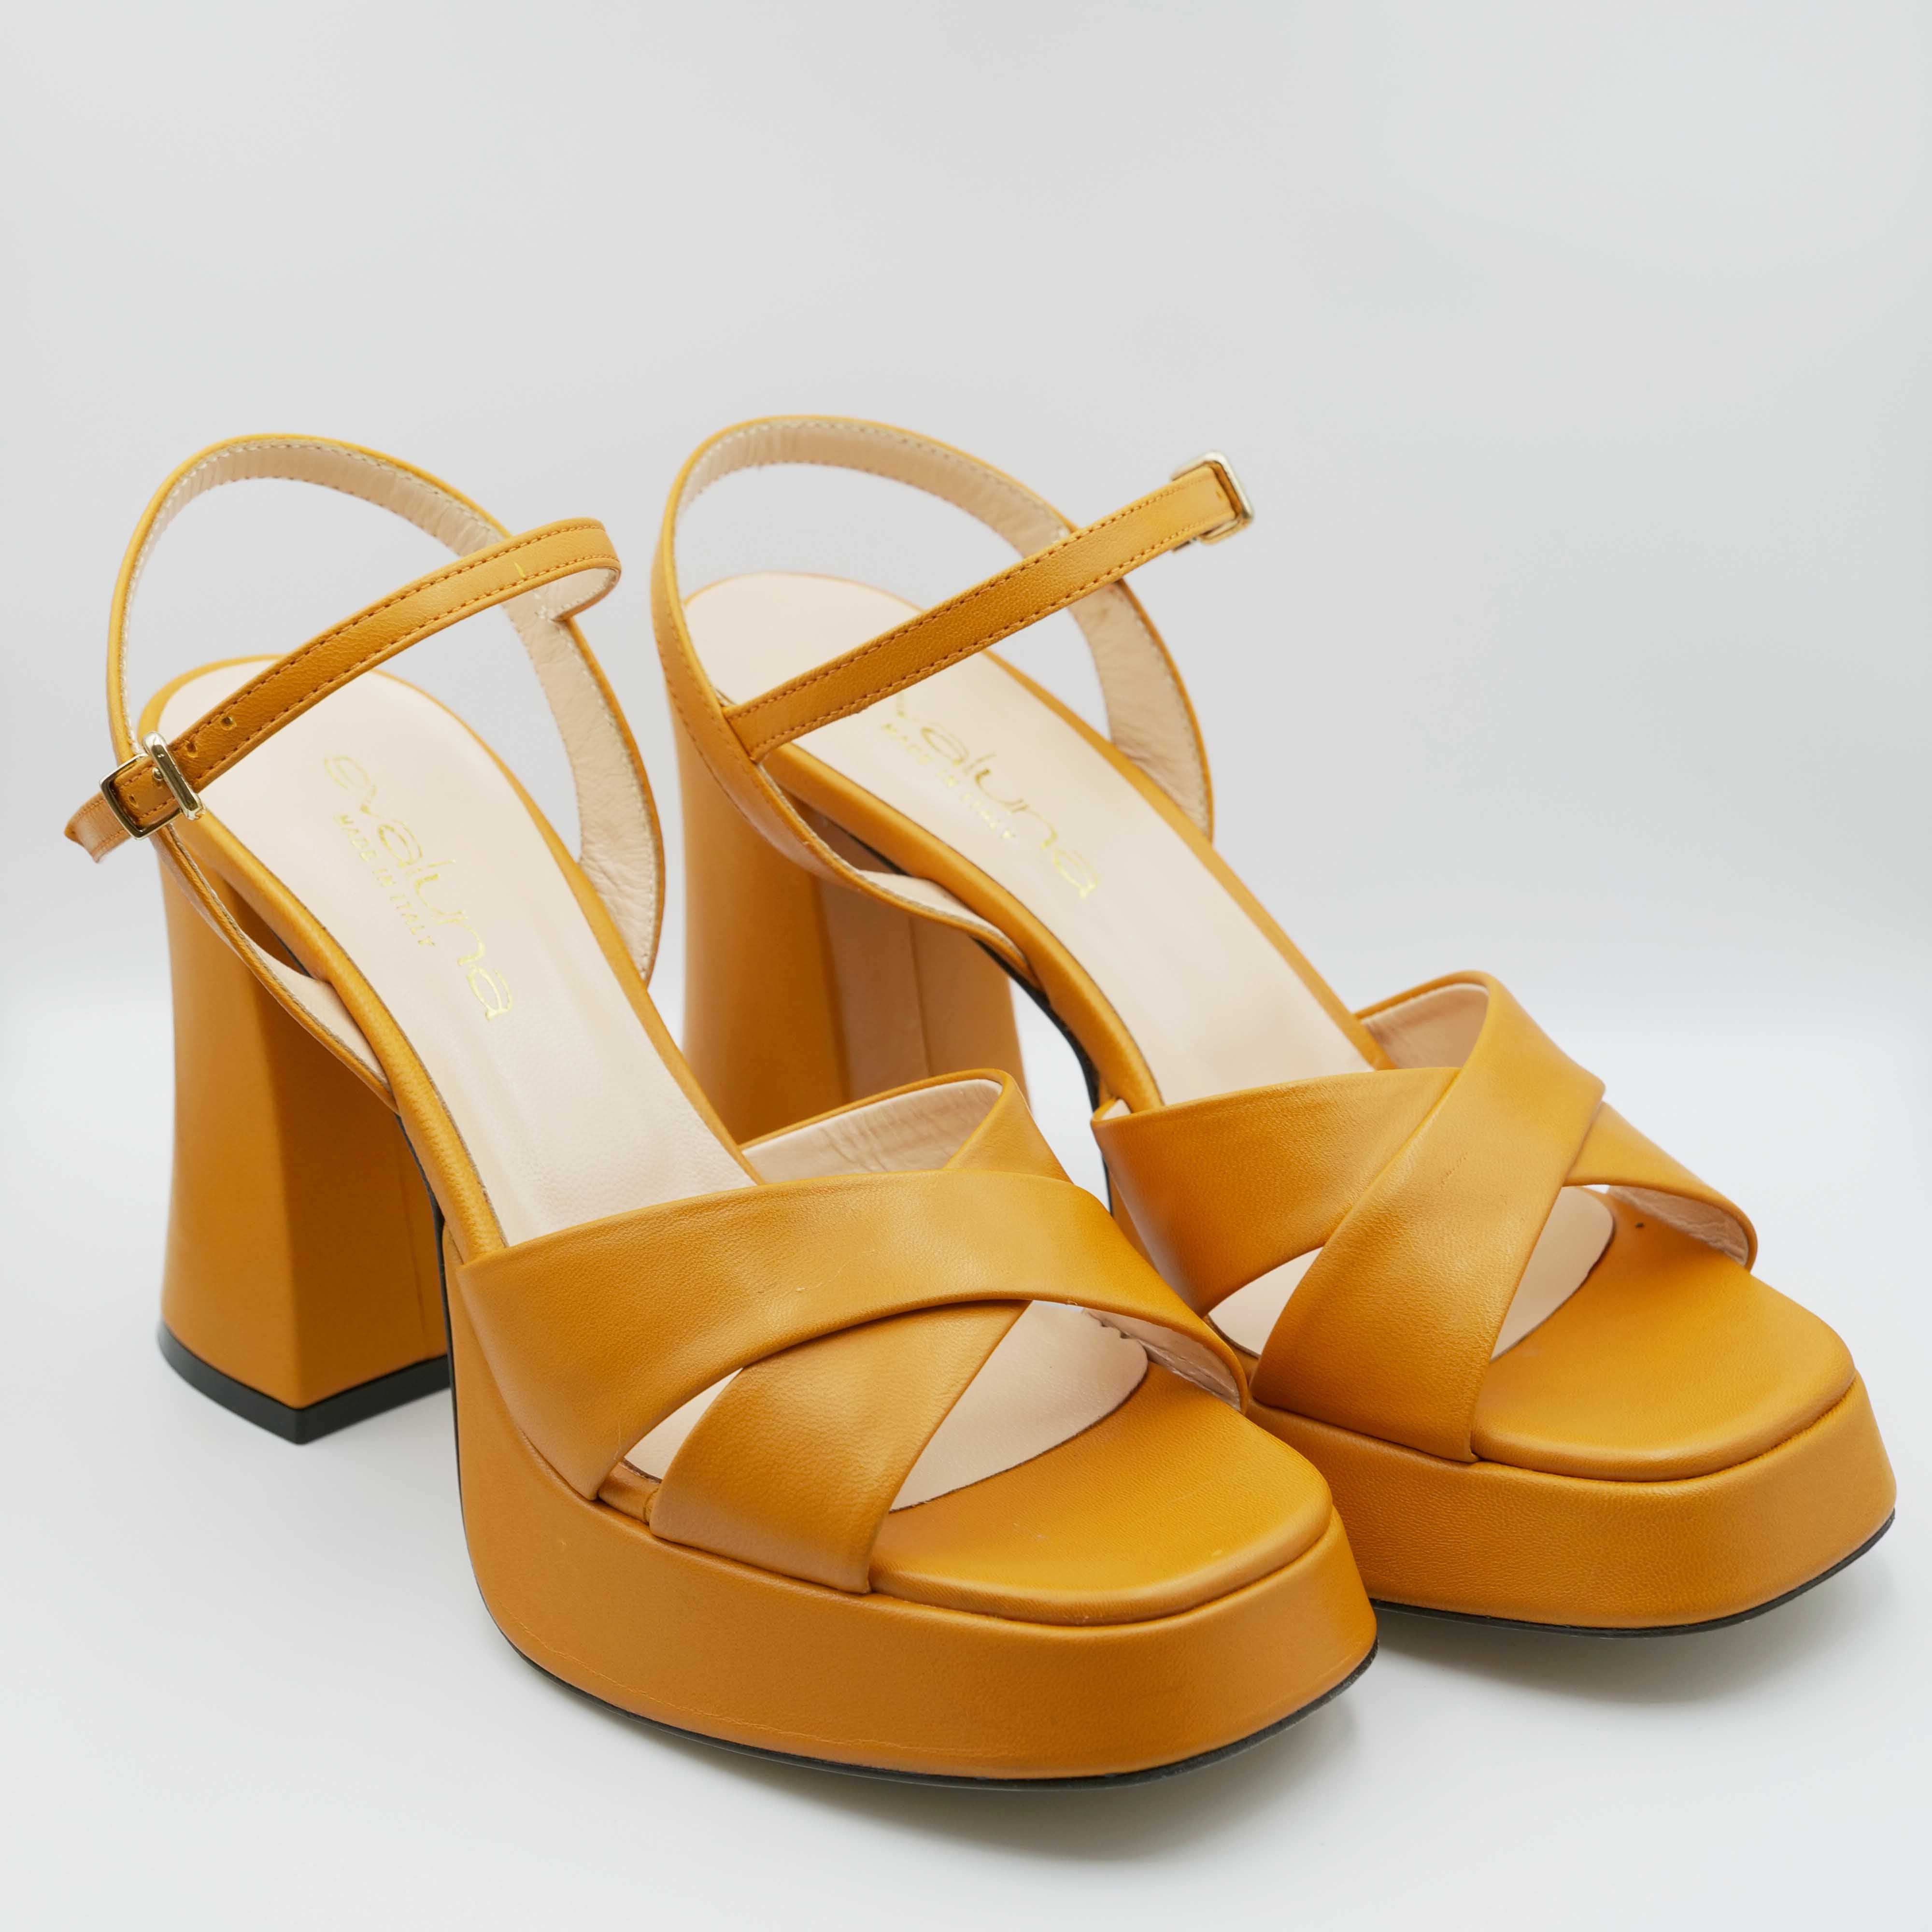 Eva Luna - Sandalo con tacco alto e largo in pelle arancio incrocio e cinturino alla caviglia